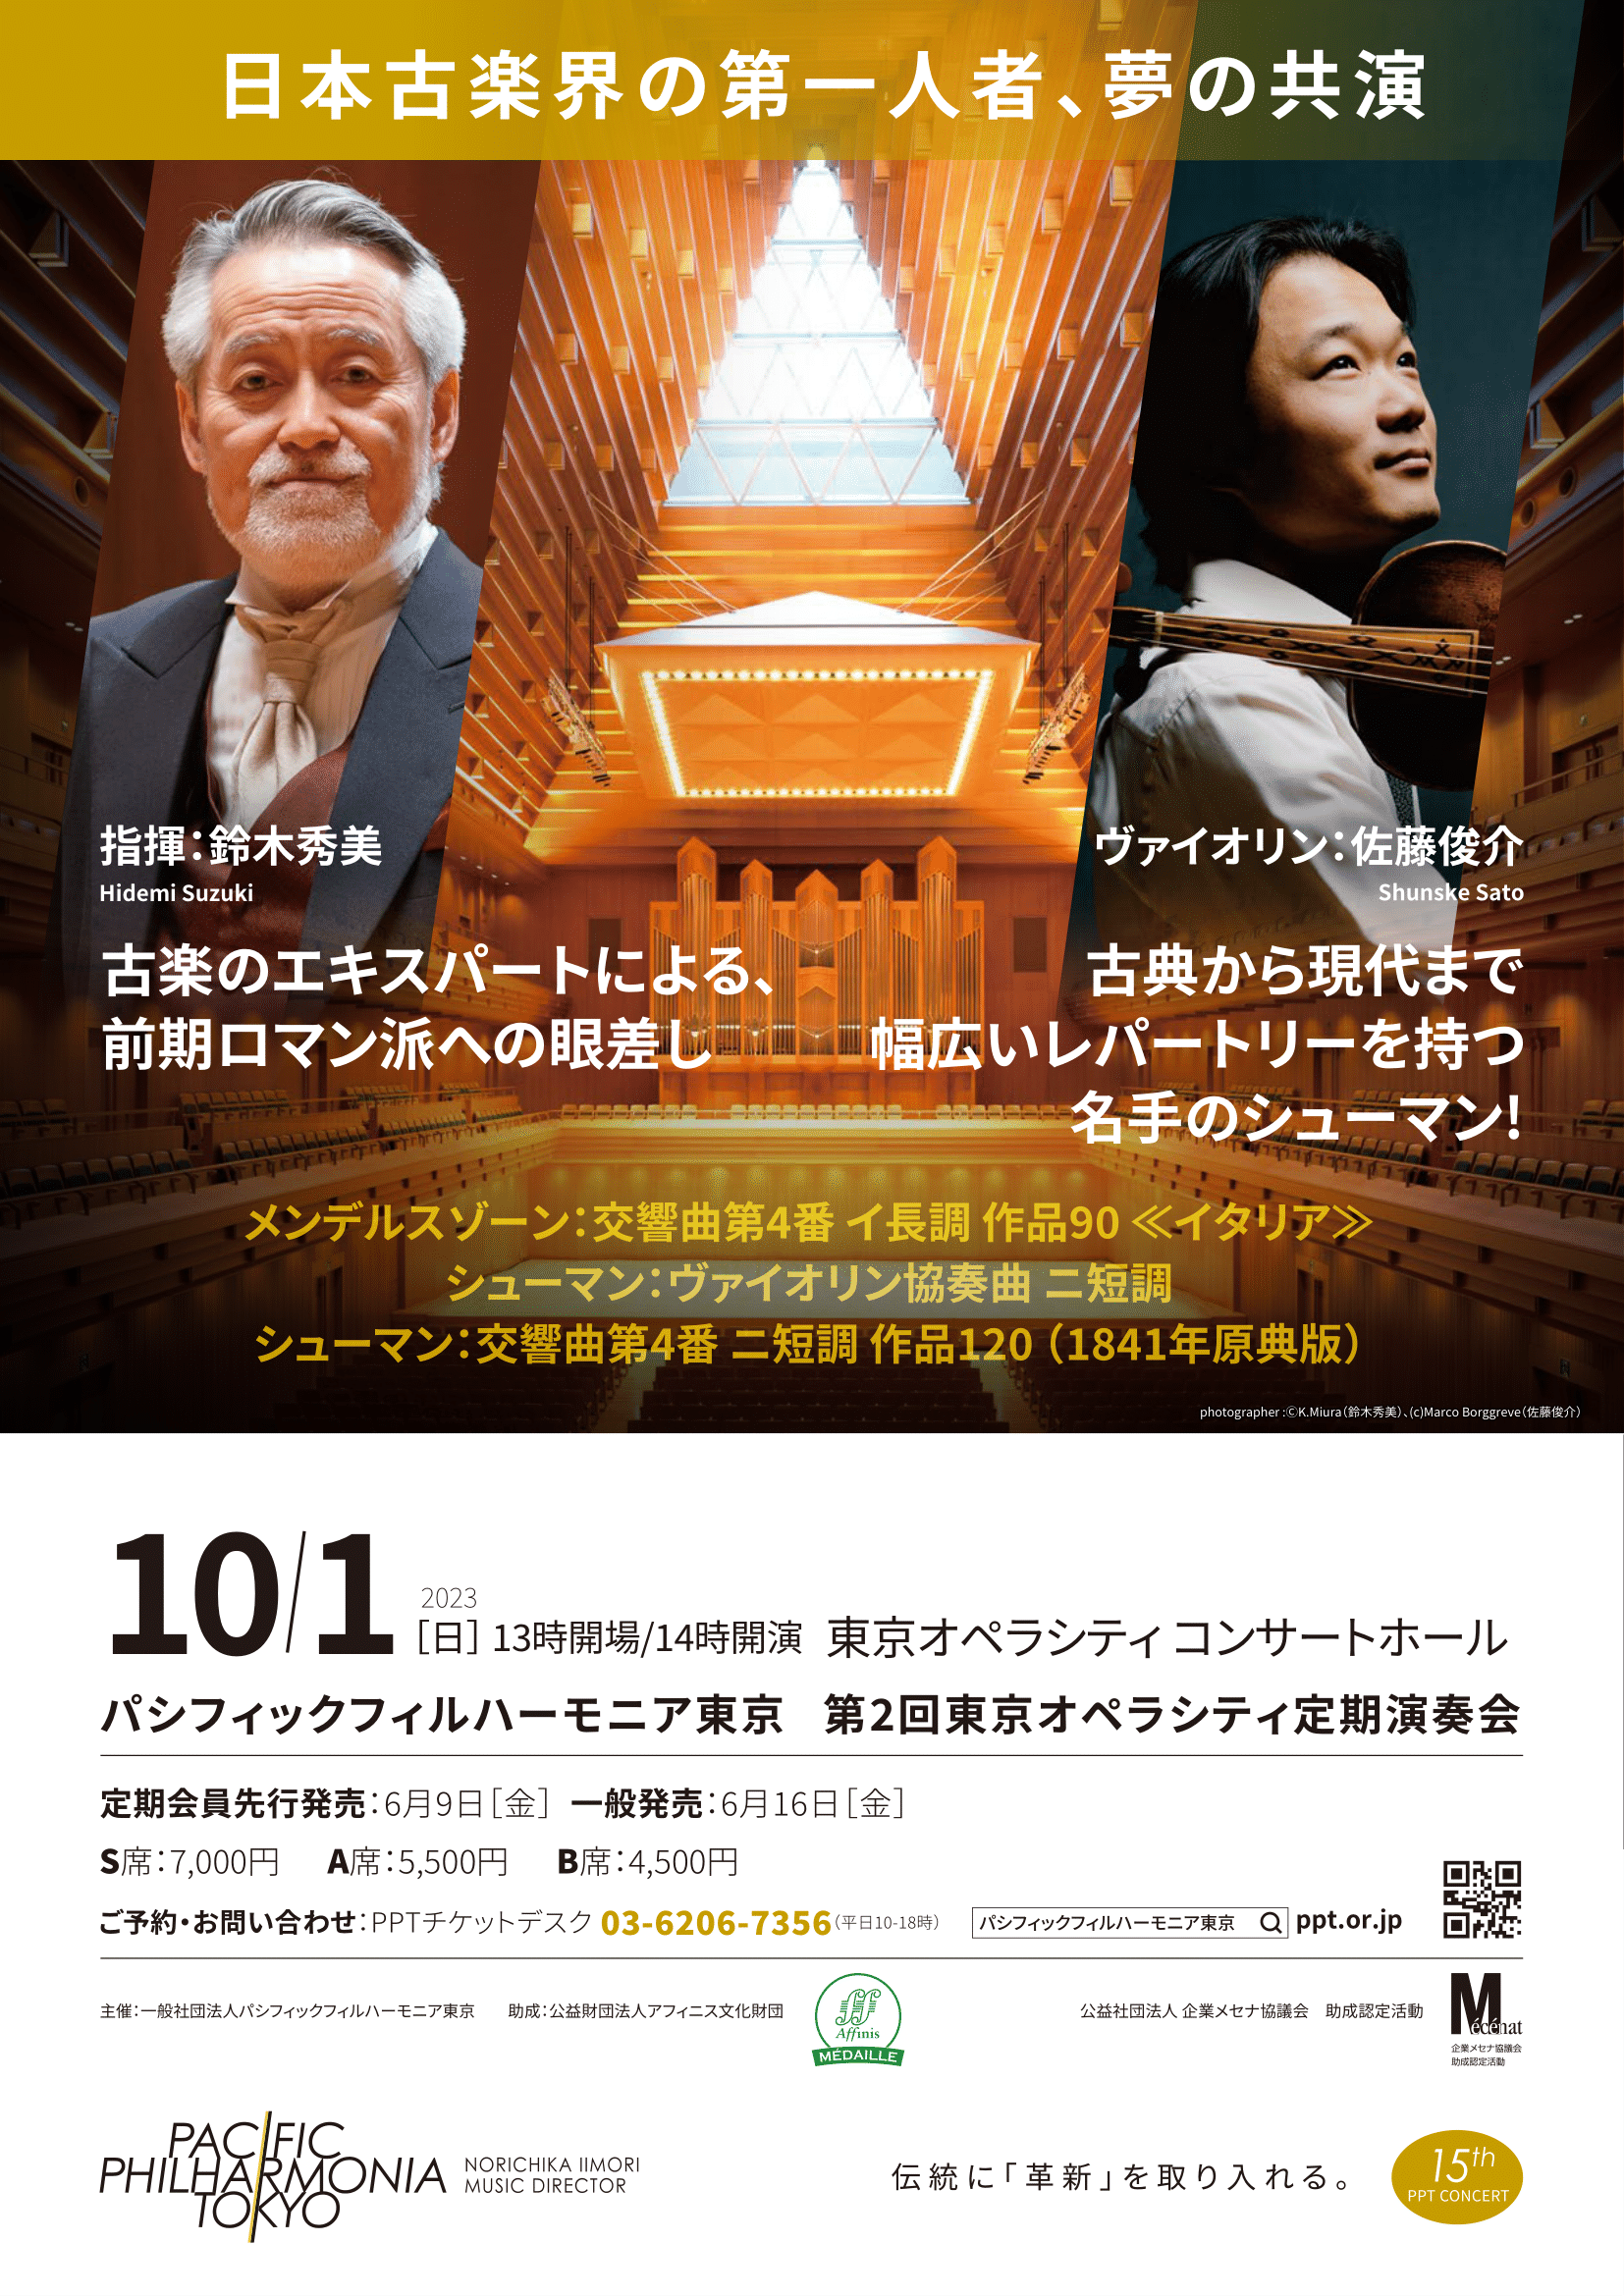 パシフィックフィルハーモニア東京第2回東京オペラシティ定期演奏会のフライヤー画像